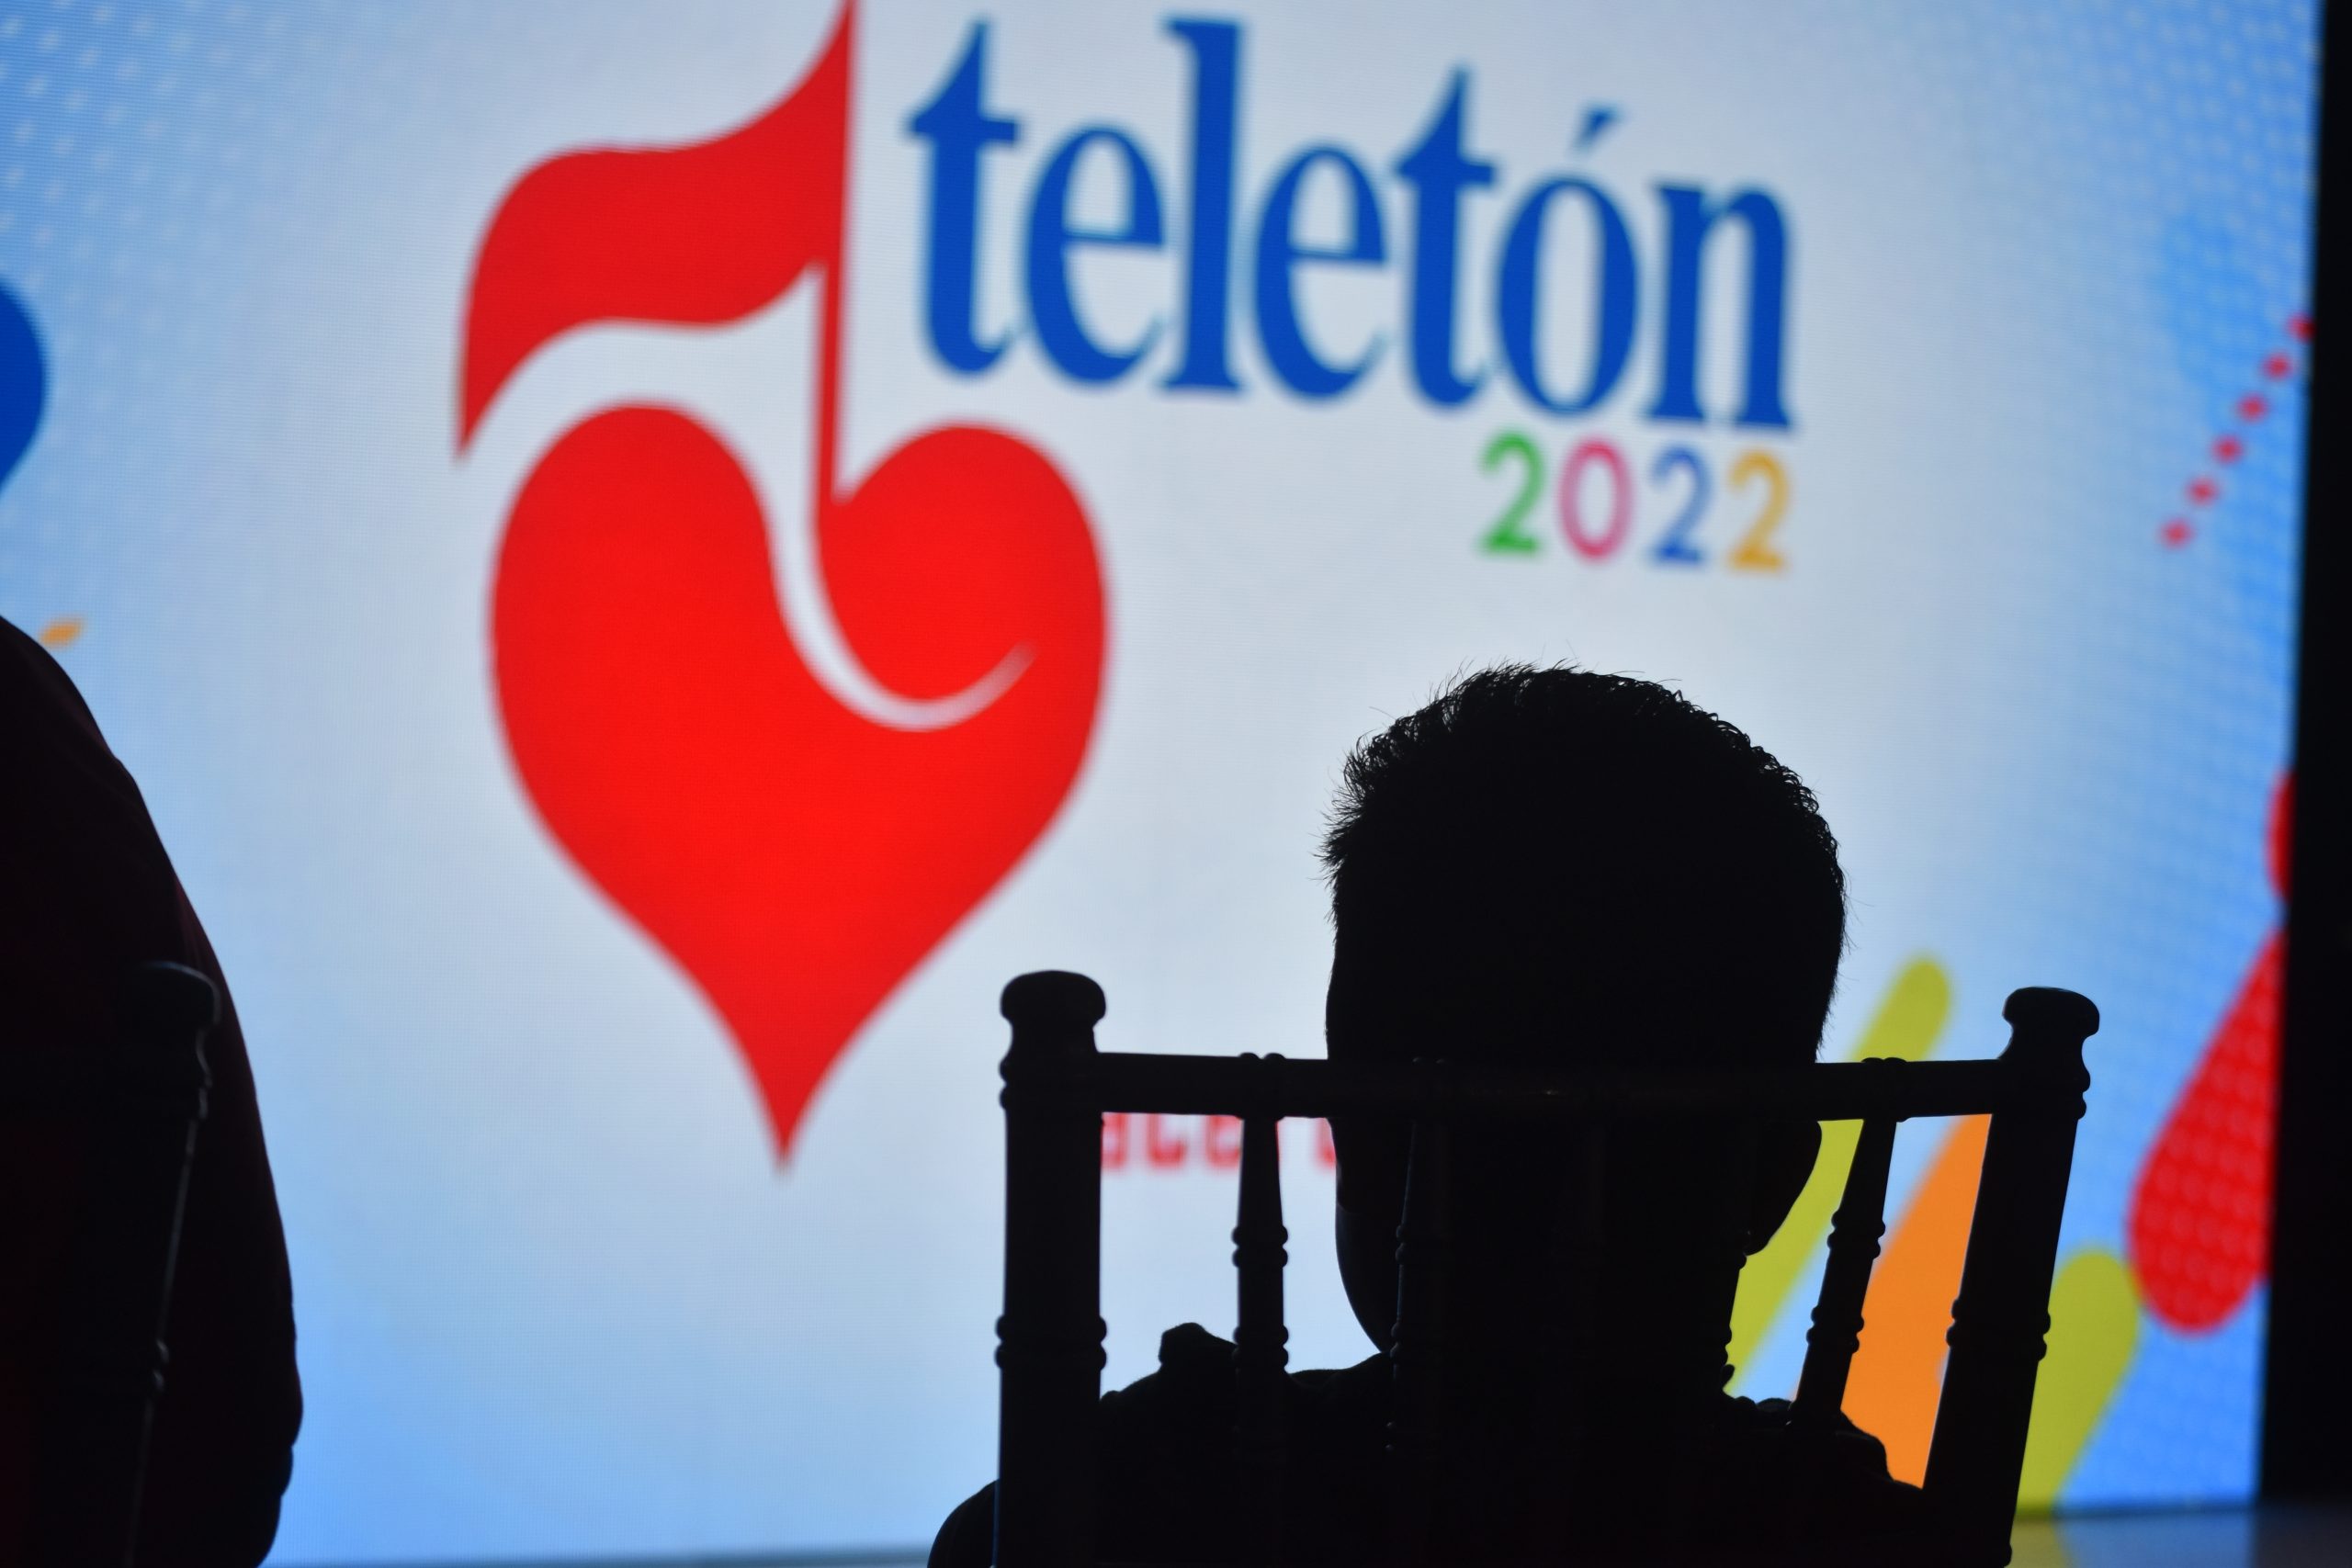 Teletón Honduras espera recaudar 70 millones de lempiras en 27 horas